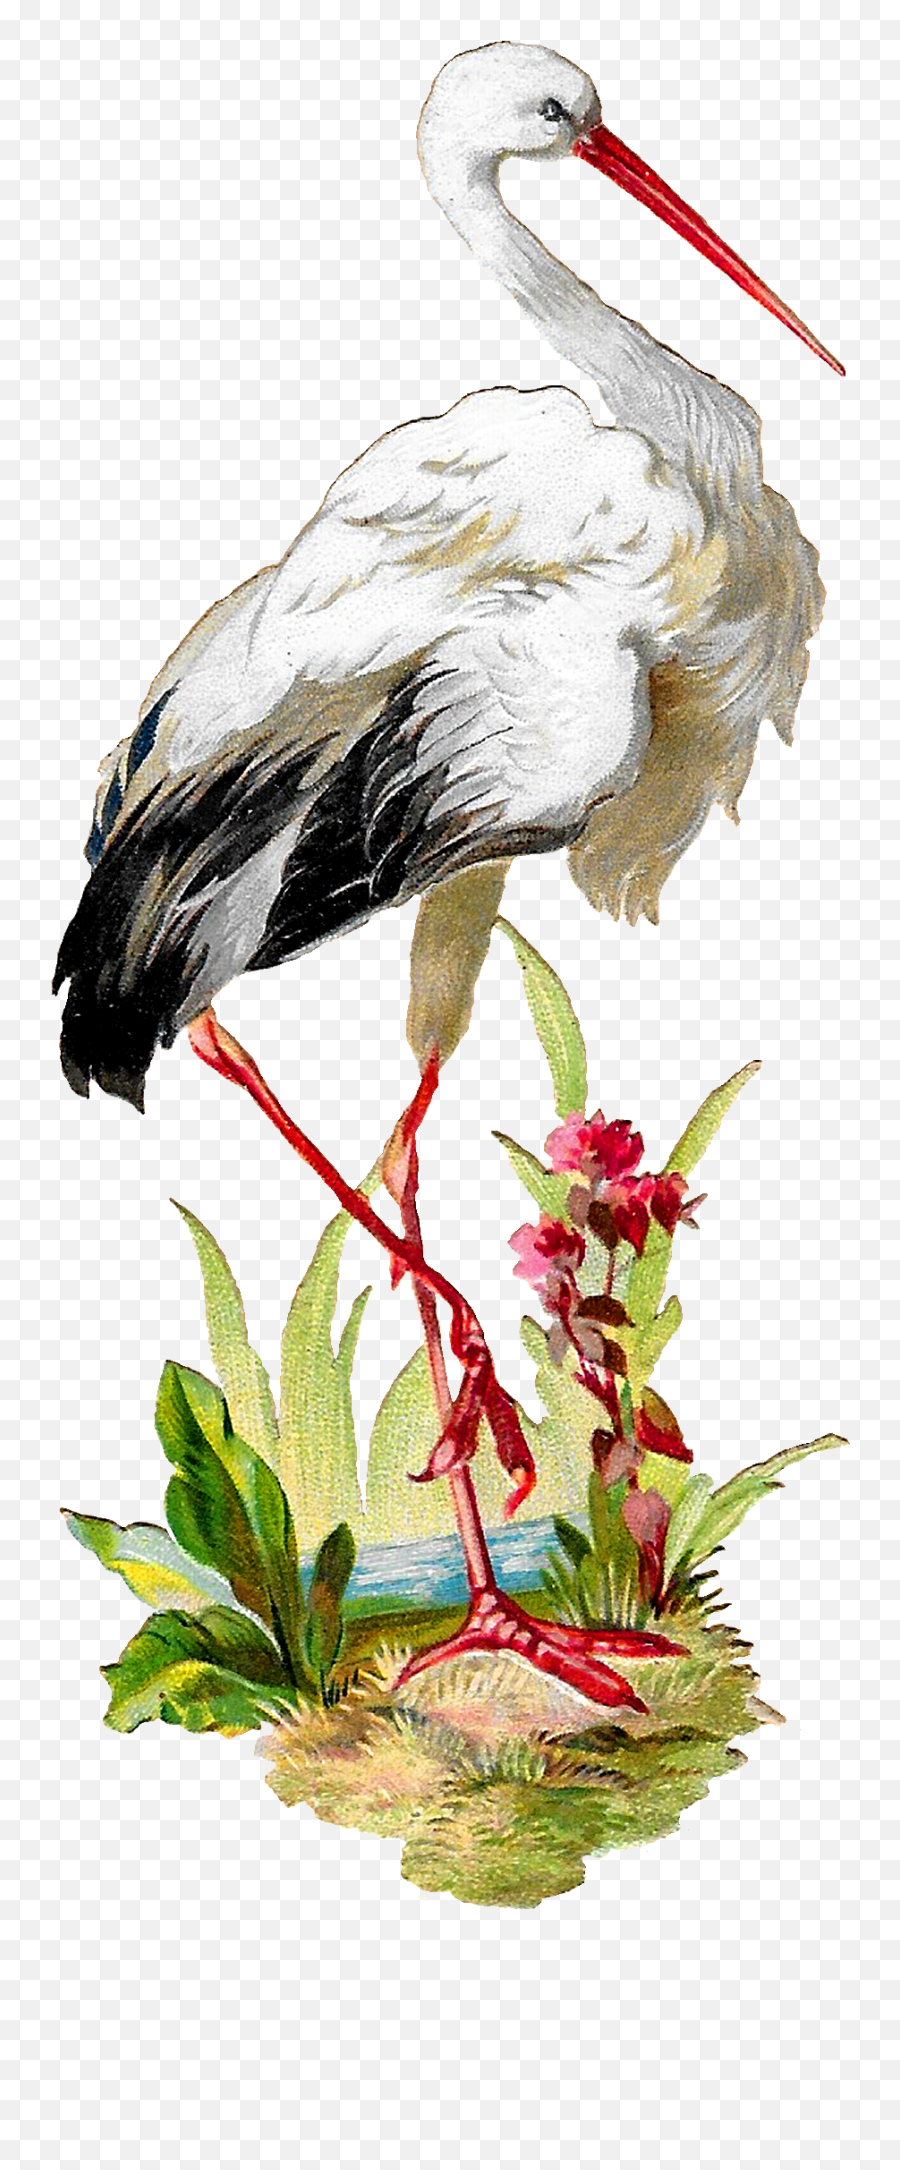 stork bird clipart